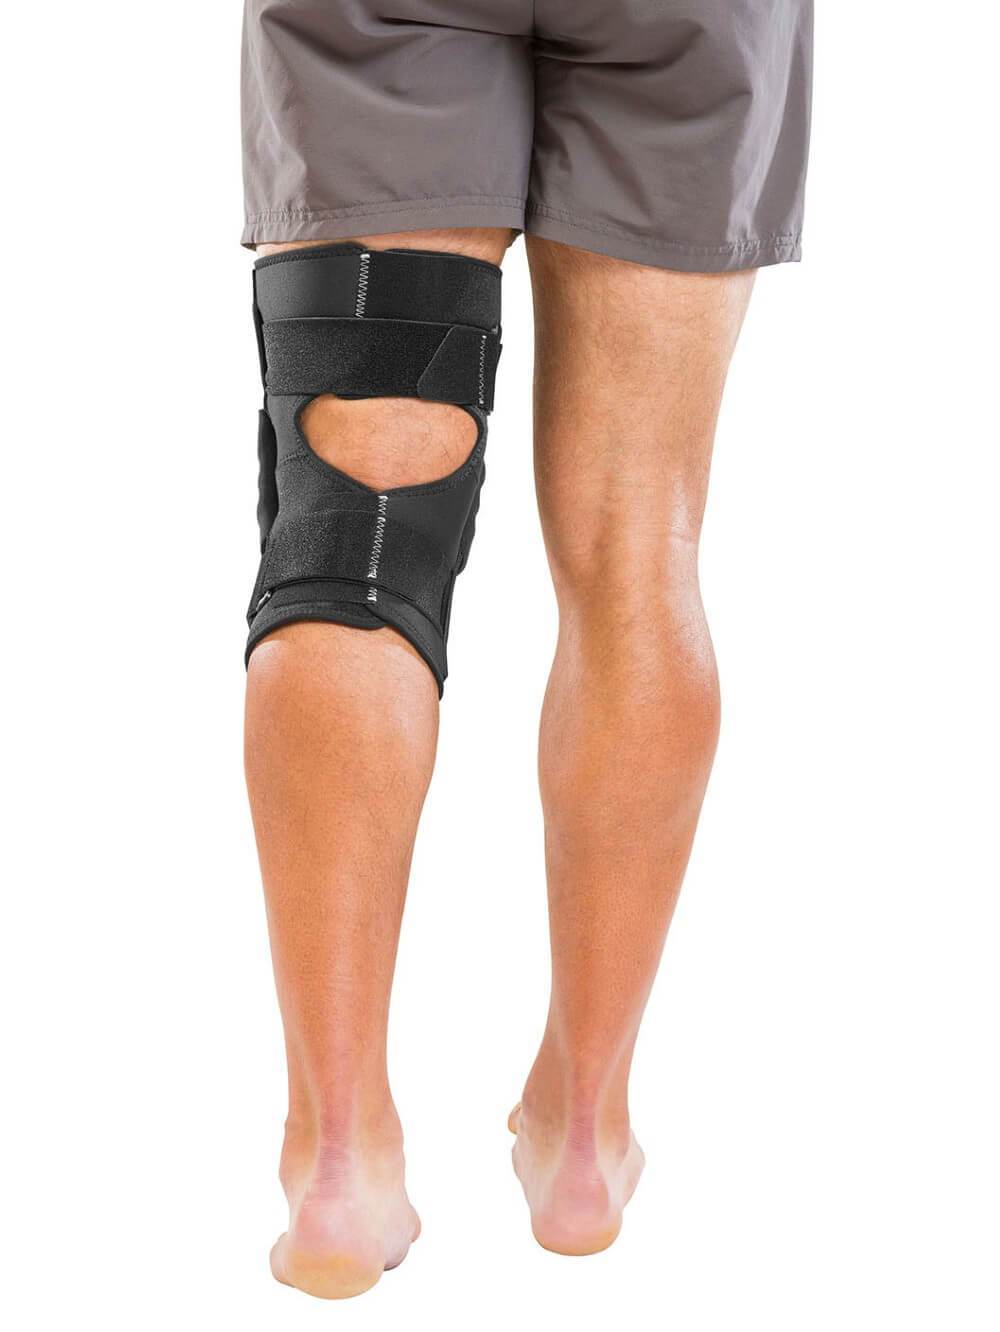 https://www.bodyheal.com.au/cdn/shop/products/mueller-hinged-wraparound-knee-brace-back_7568df0c-d745-4ab3-b1d8-4af9a8742a8e_1800x1800.jpg?v=1607016298